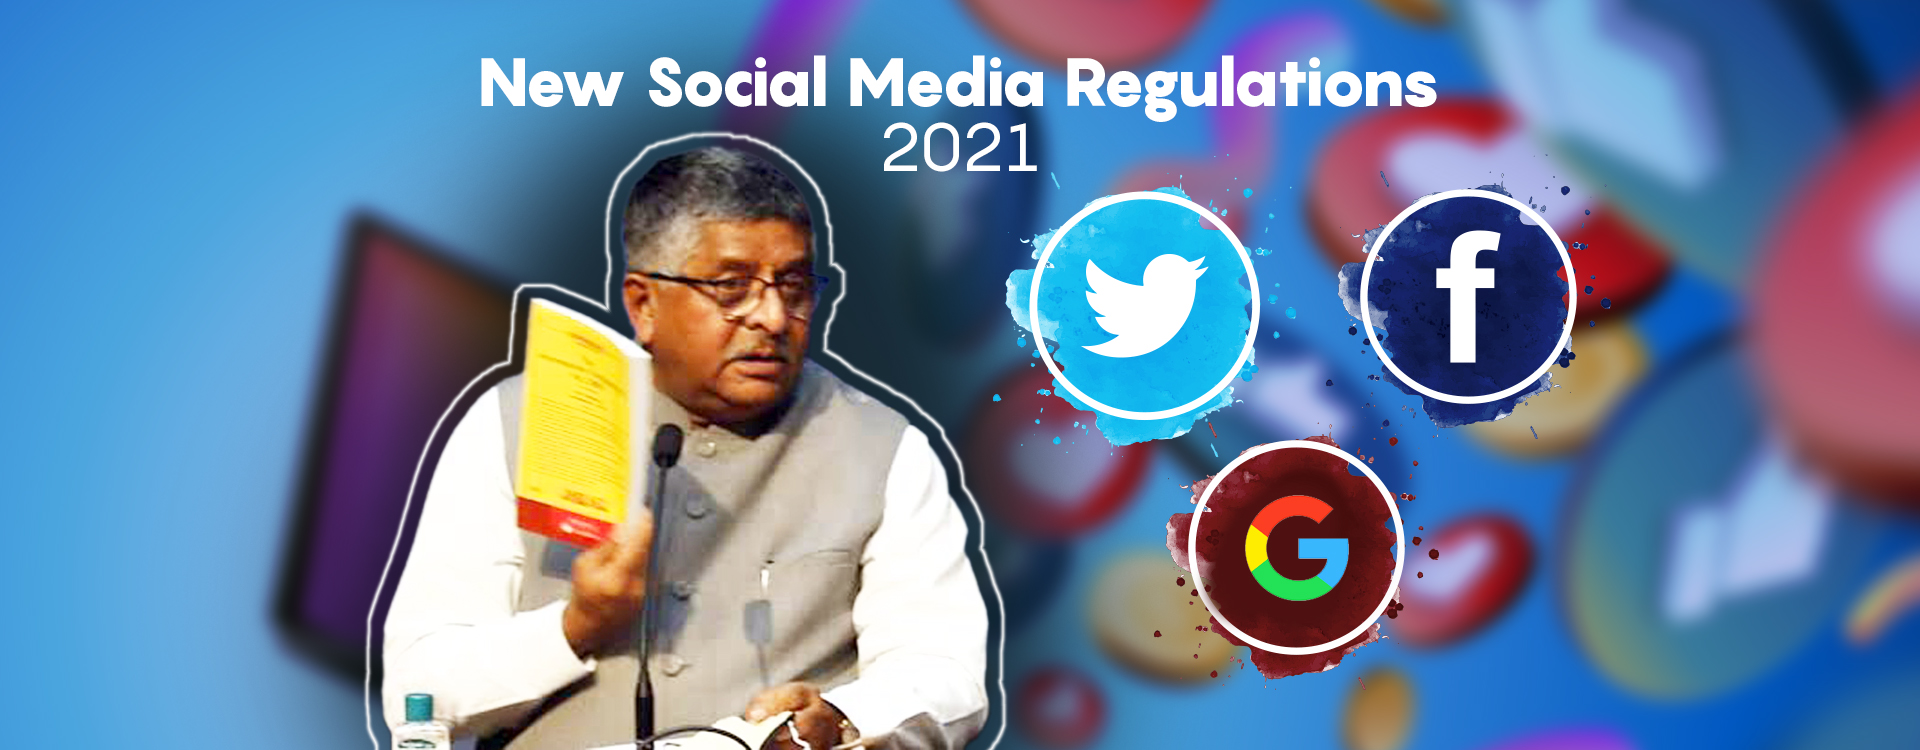 New Social Media Facebook, Google, Twitter, Digital Media, OTT regulations 2021